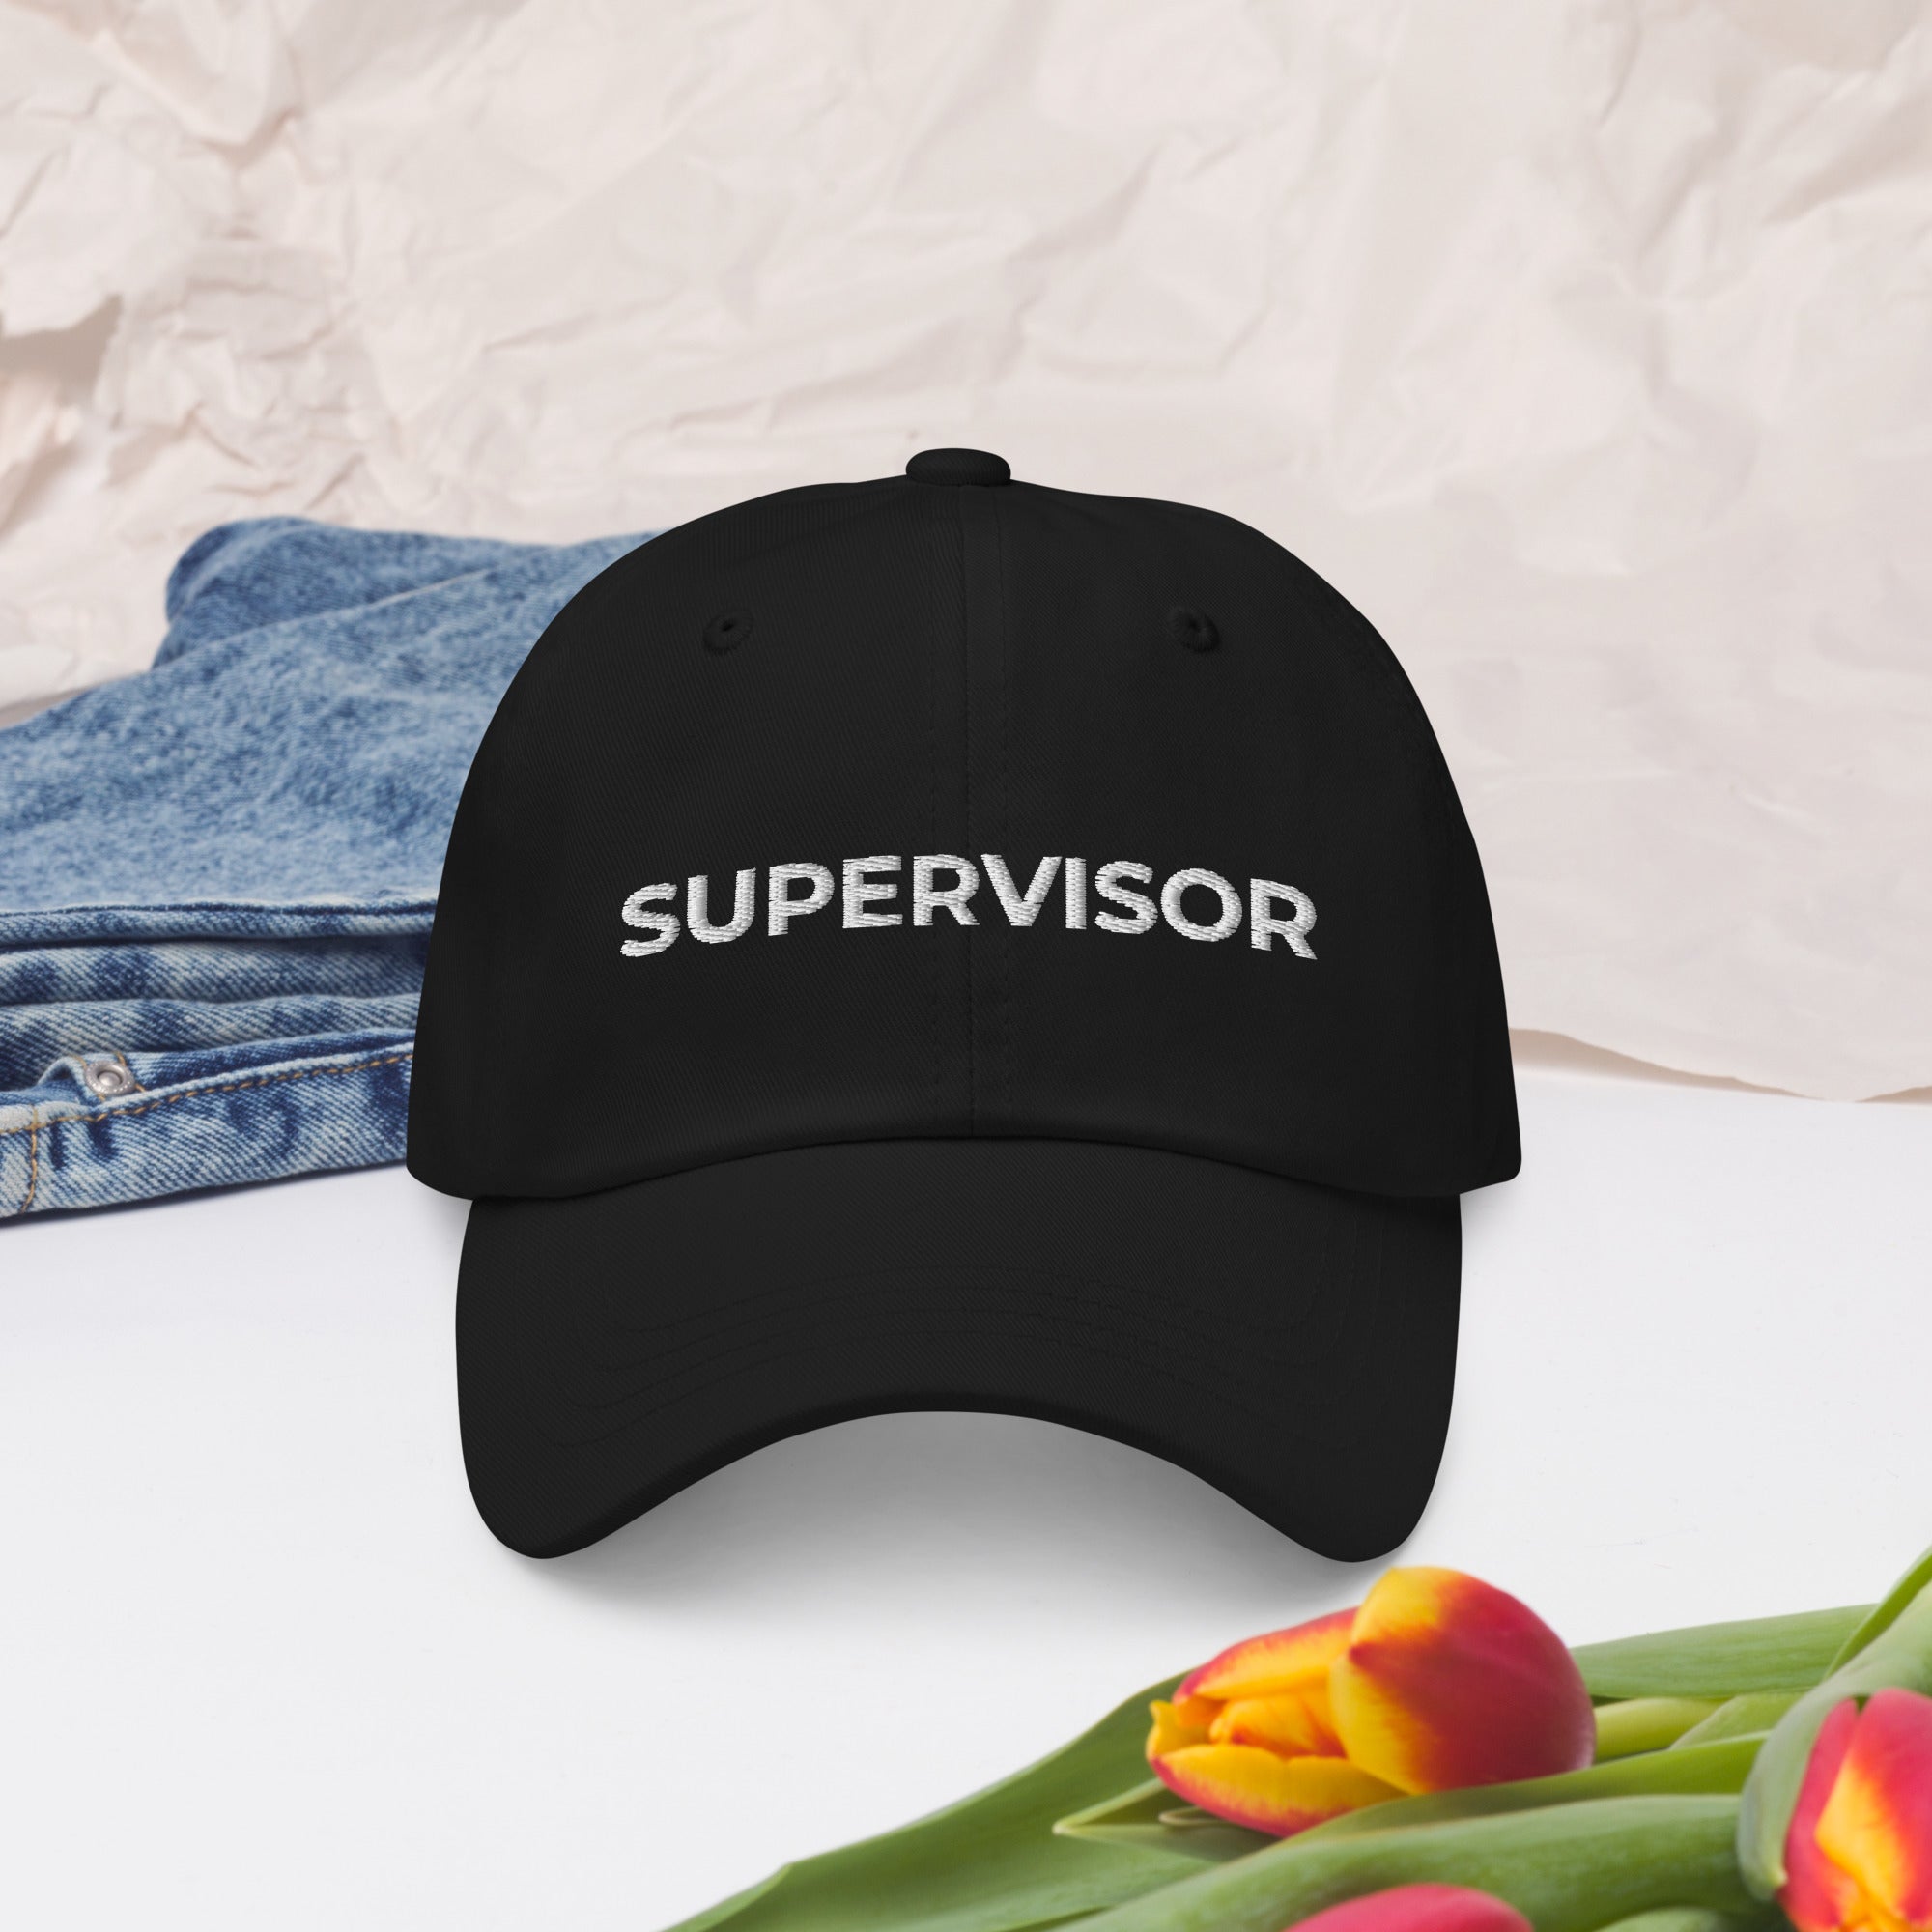 Supervisor Dad hat, Supervisor gift, Supervisor hat, Supervisor baseball cap, Funny Supervisor gift, Supervisor cap, Supervisor birthday hat - Madeinsea©